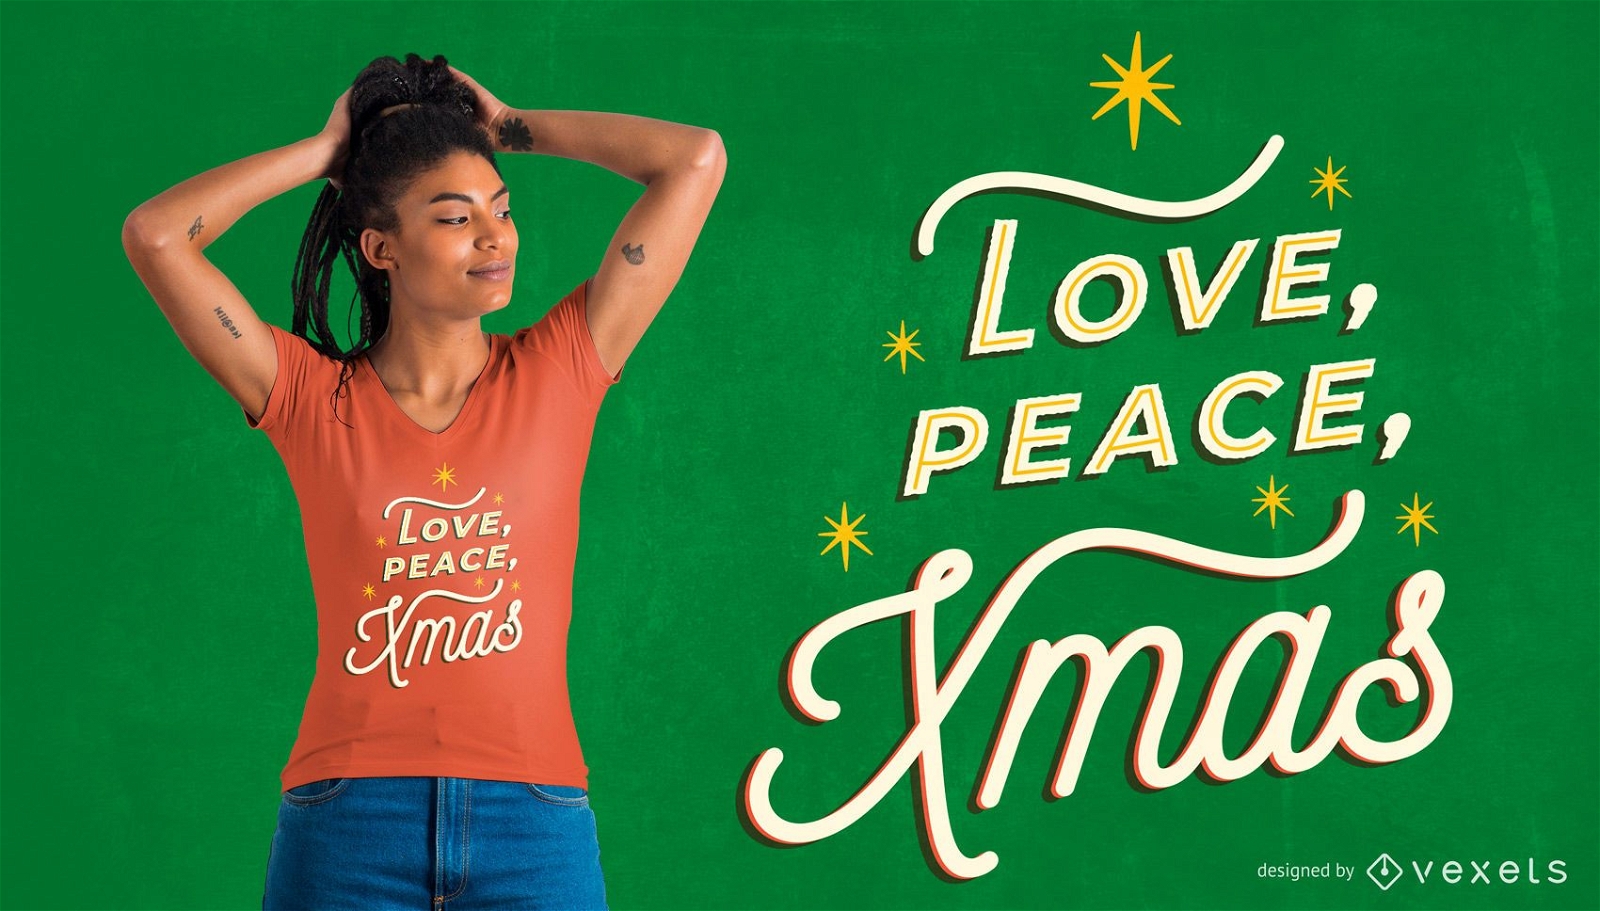 Love peace xmas t-shirt design